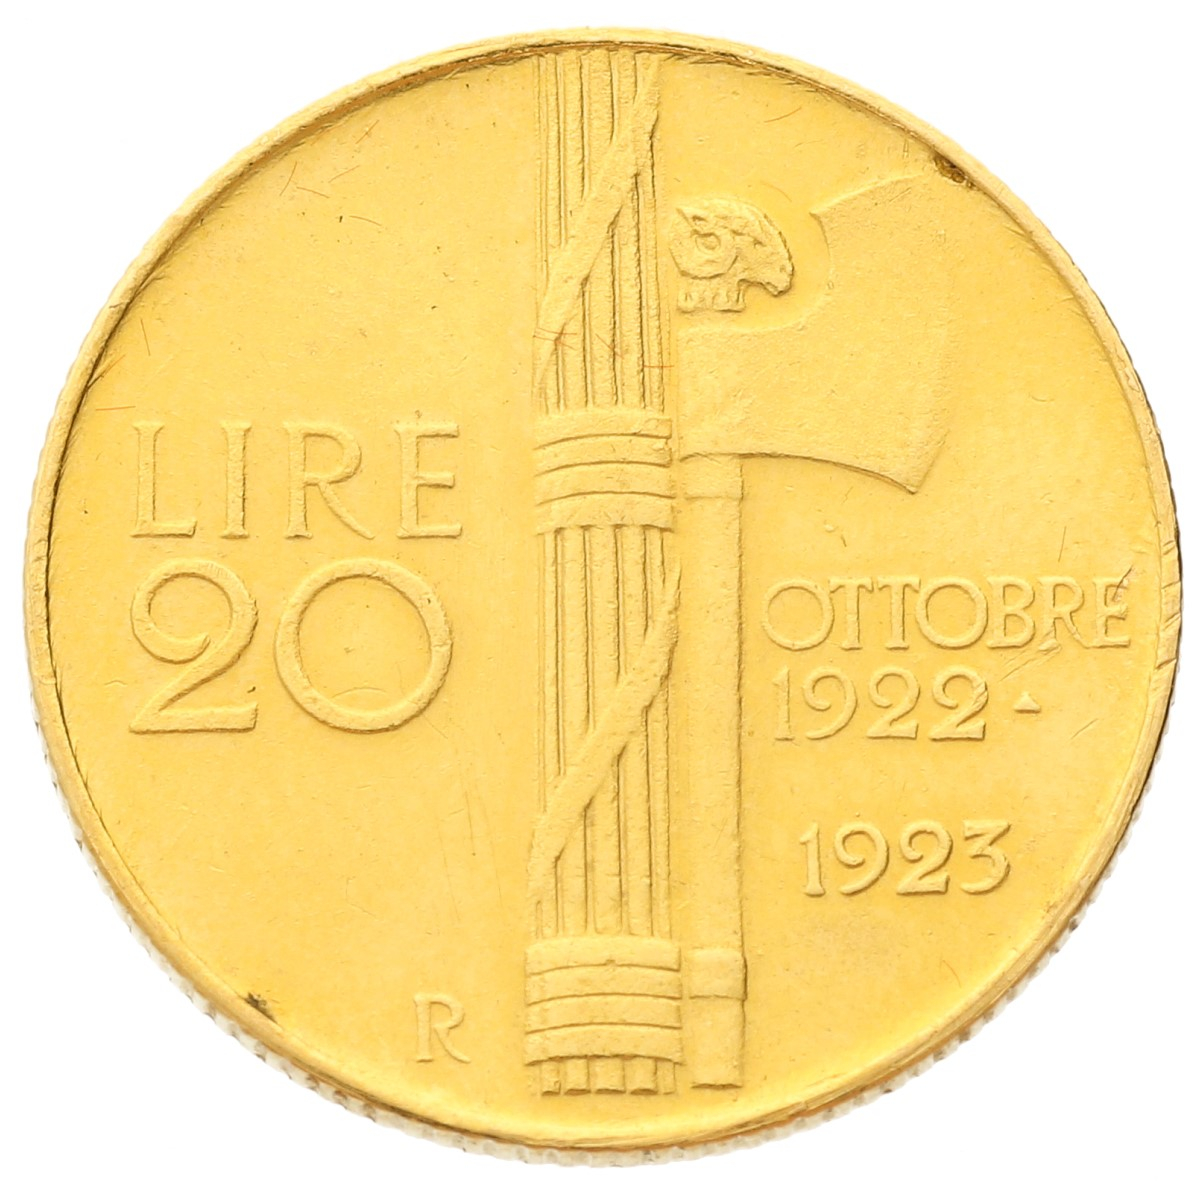 Italy - 20 lire - 1923 - Vittorio Emanuele III